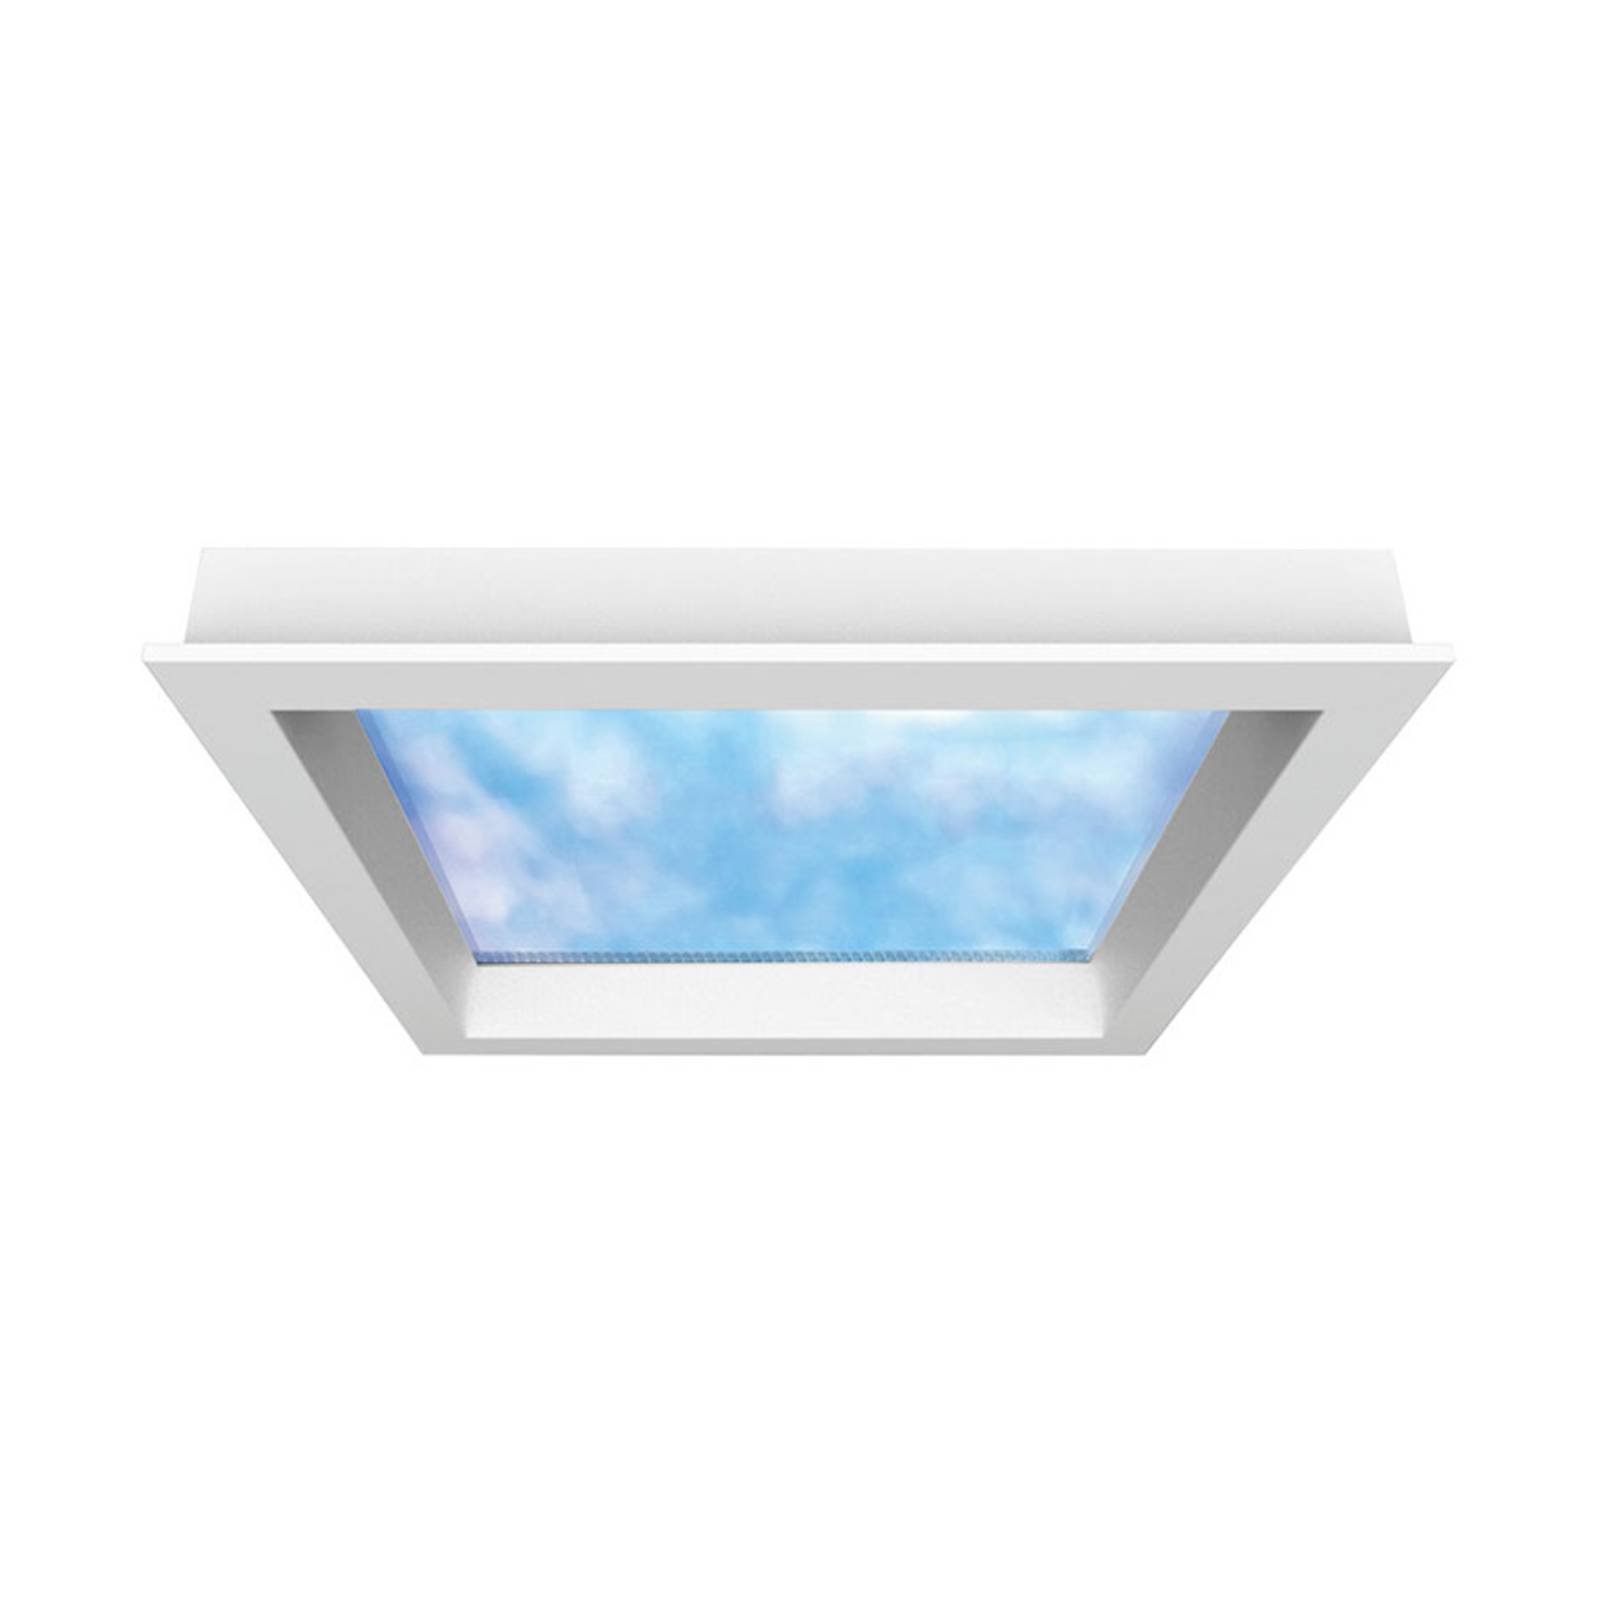 Image of Hera Pannello LED Sky Window 60x60cm, telaio incasso